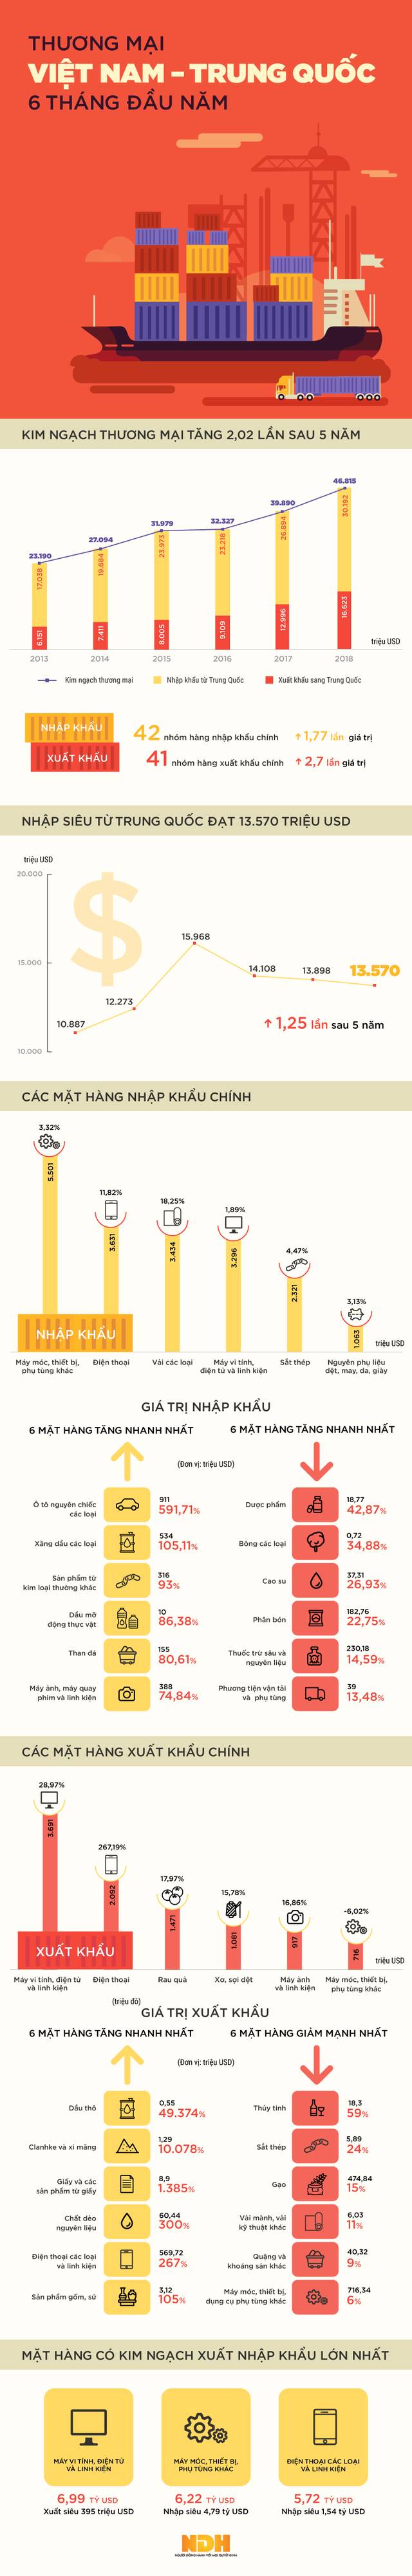 Infographic: Kim ngạch thương mại Việt Nam - Trung Quốc vượt 2 tỷ USD sau nửa năm - Ảnh 1.